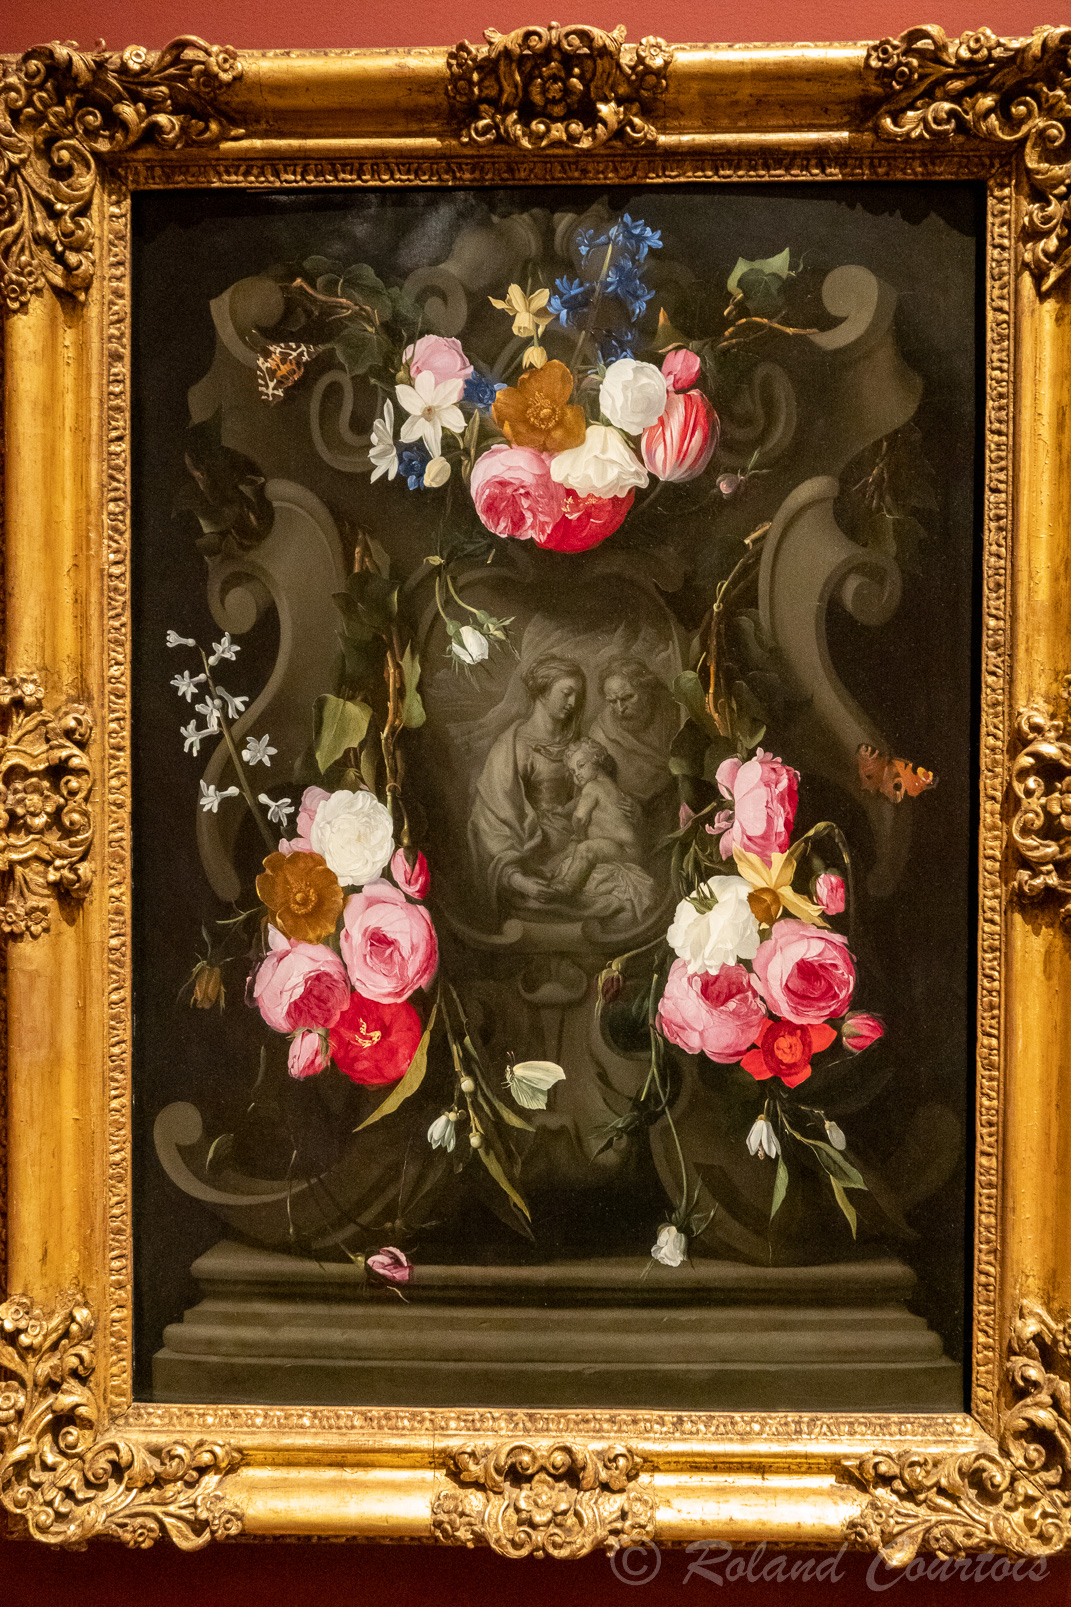 Daniel Seghers - Guilande de fleurs avec la Sainte Famille. (1625-27)